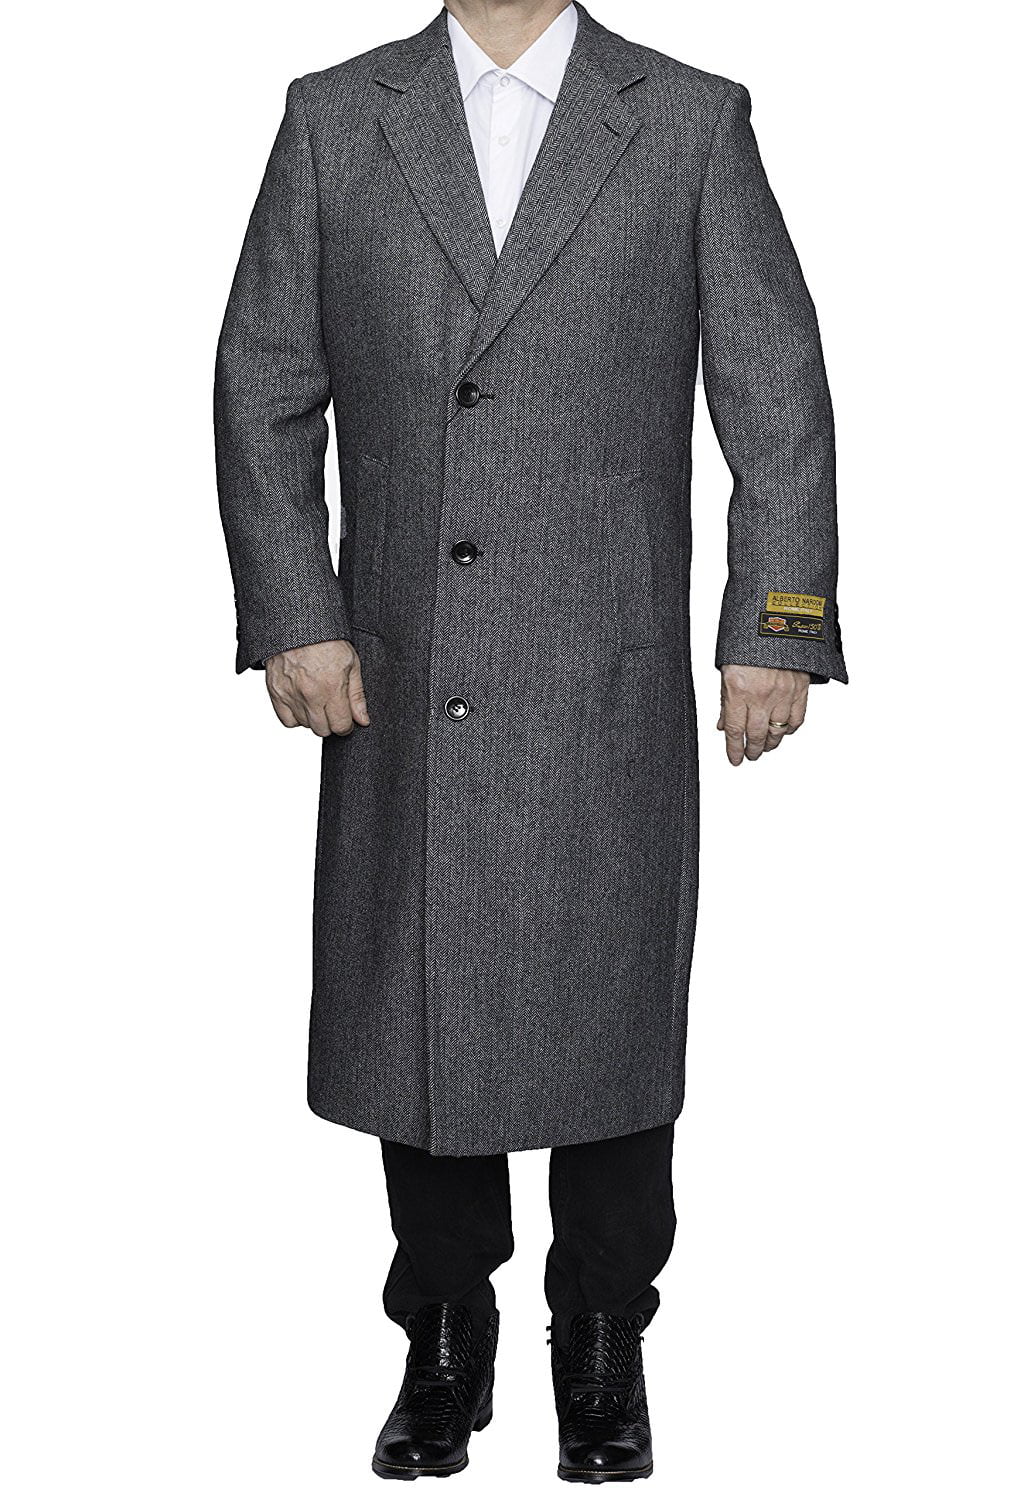 Alberto Nardoni Gray Herringbone Wool Blend Luxury Overcoat Topcoat ...